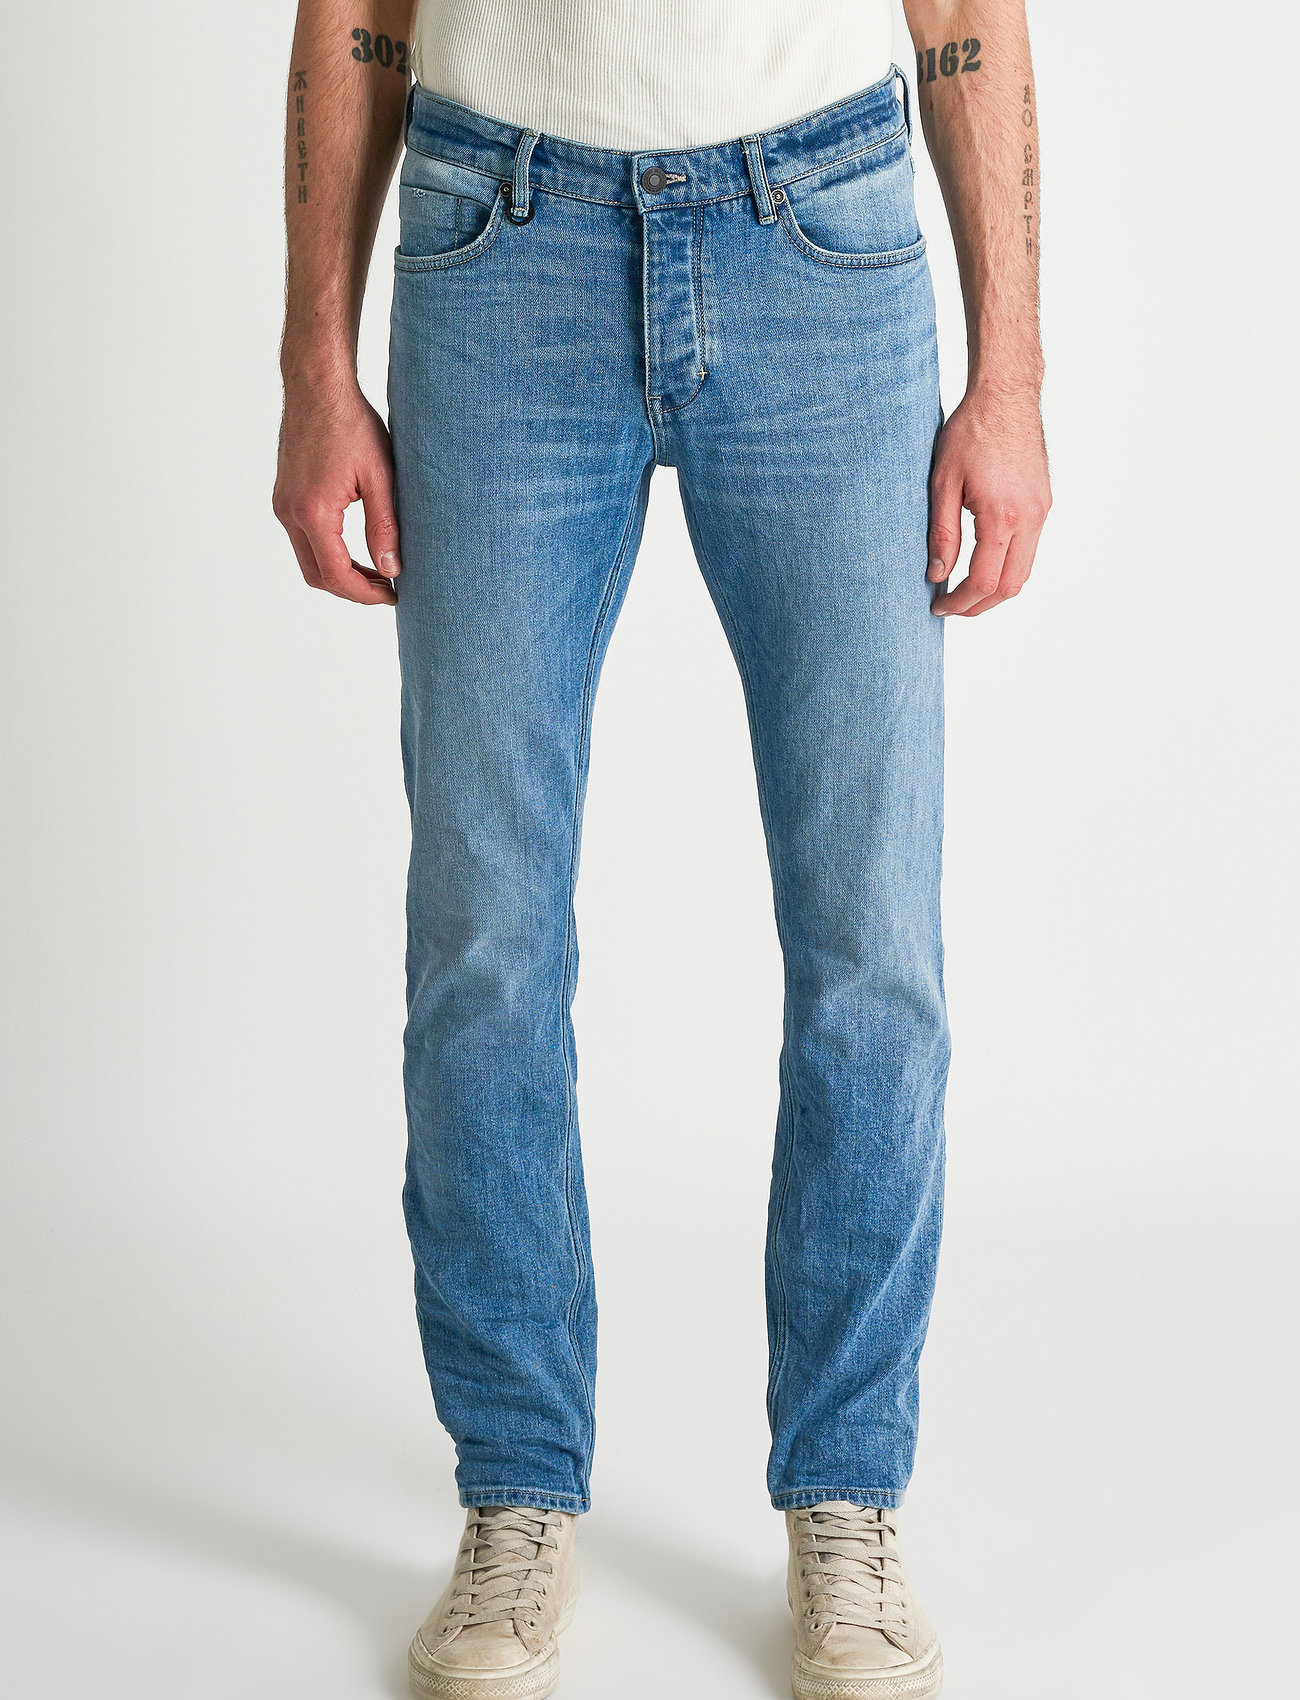 NEUW - IGGY SKINNY - skinny jeans - jailbird - 0